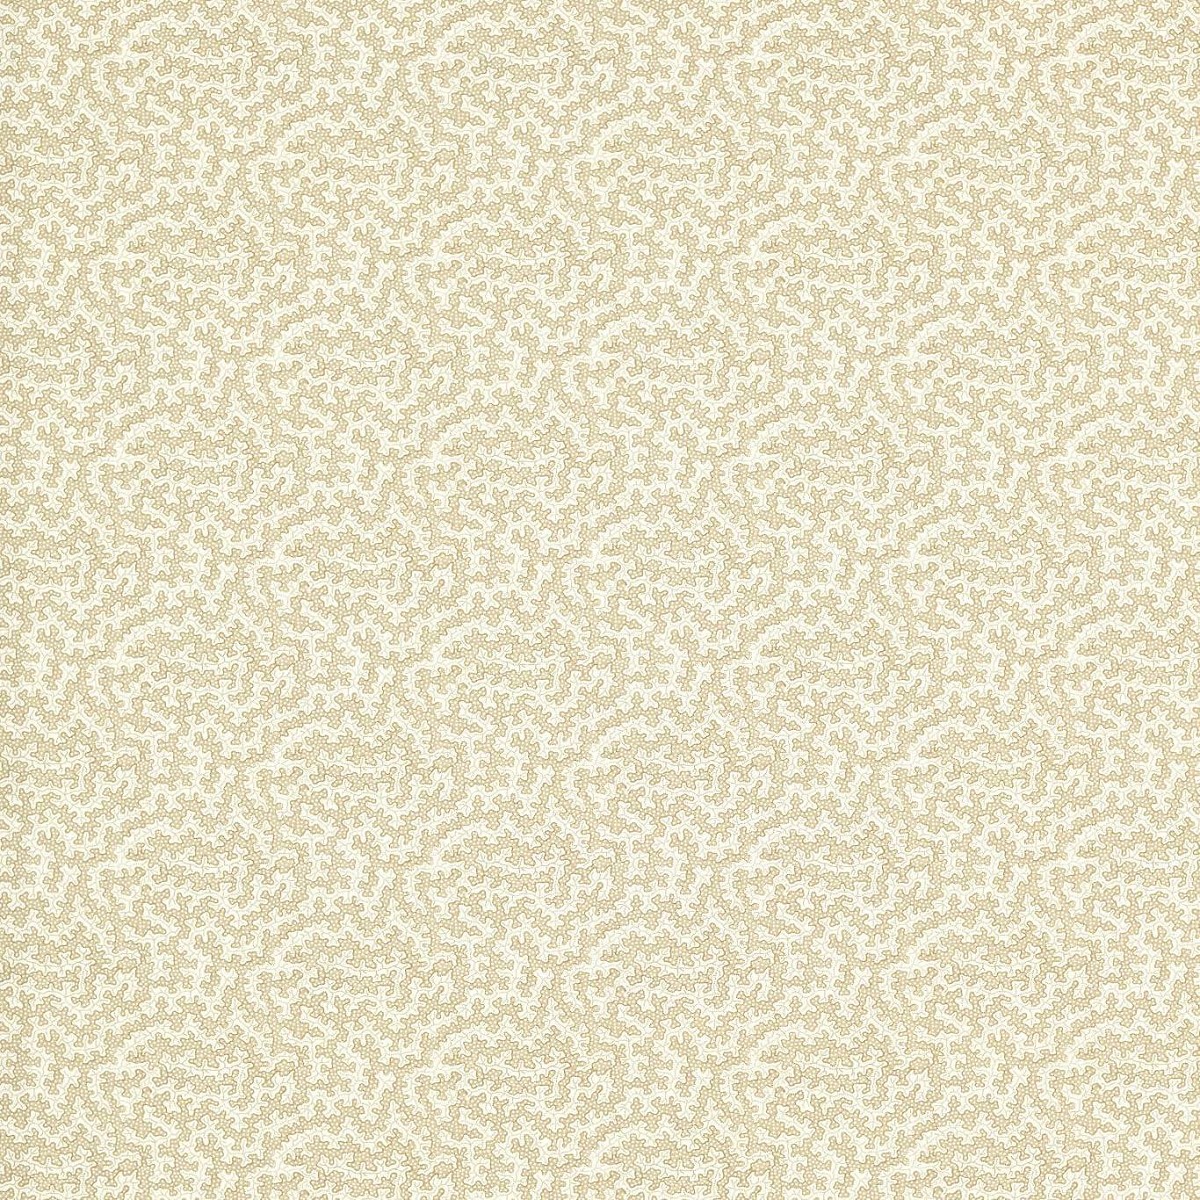 Truffle Sand Dollar Fabric by Sanderson